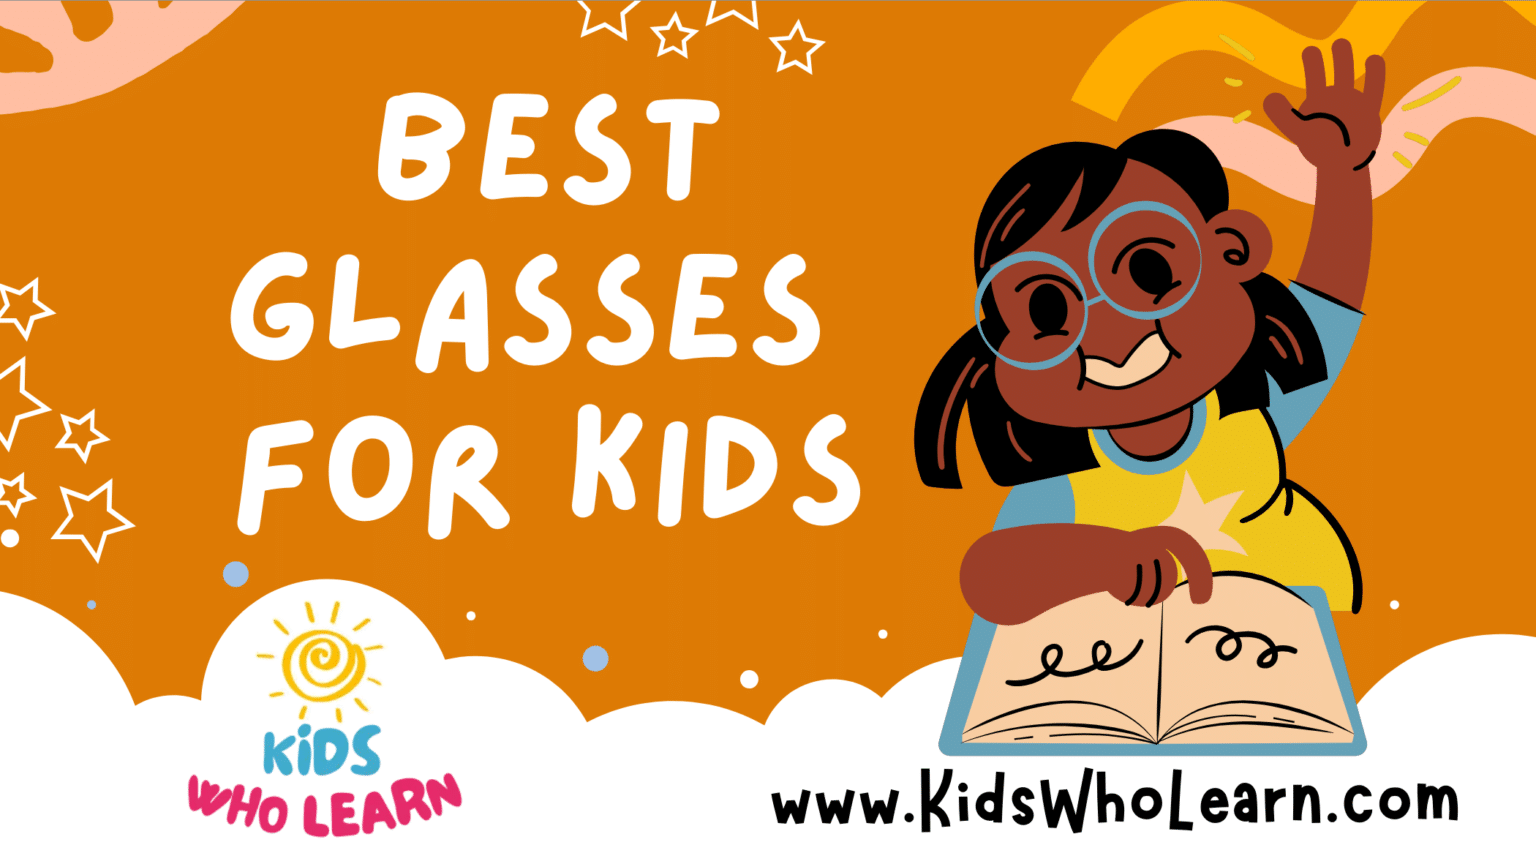 Best Glasses For Kids